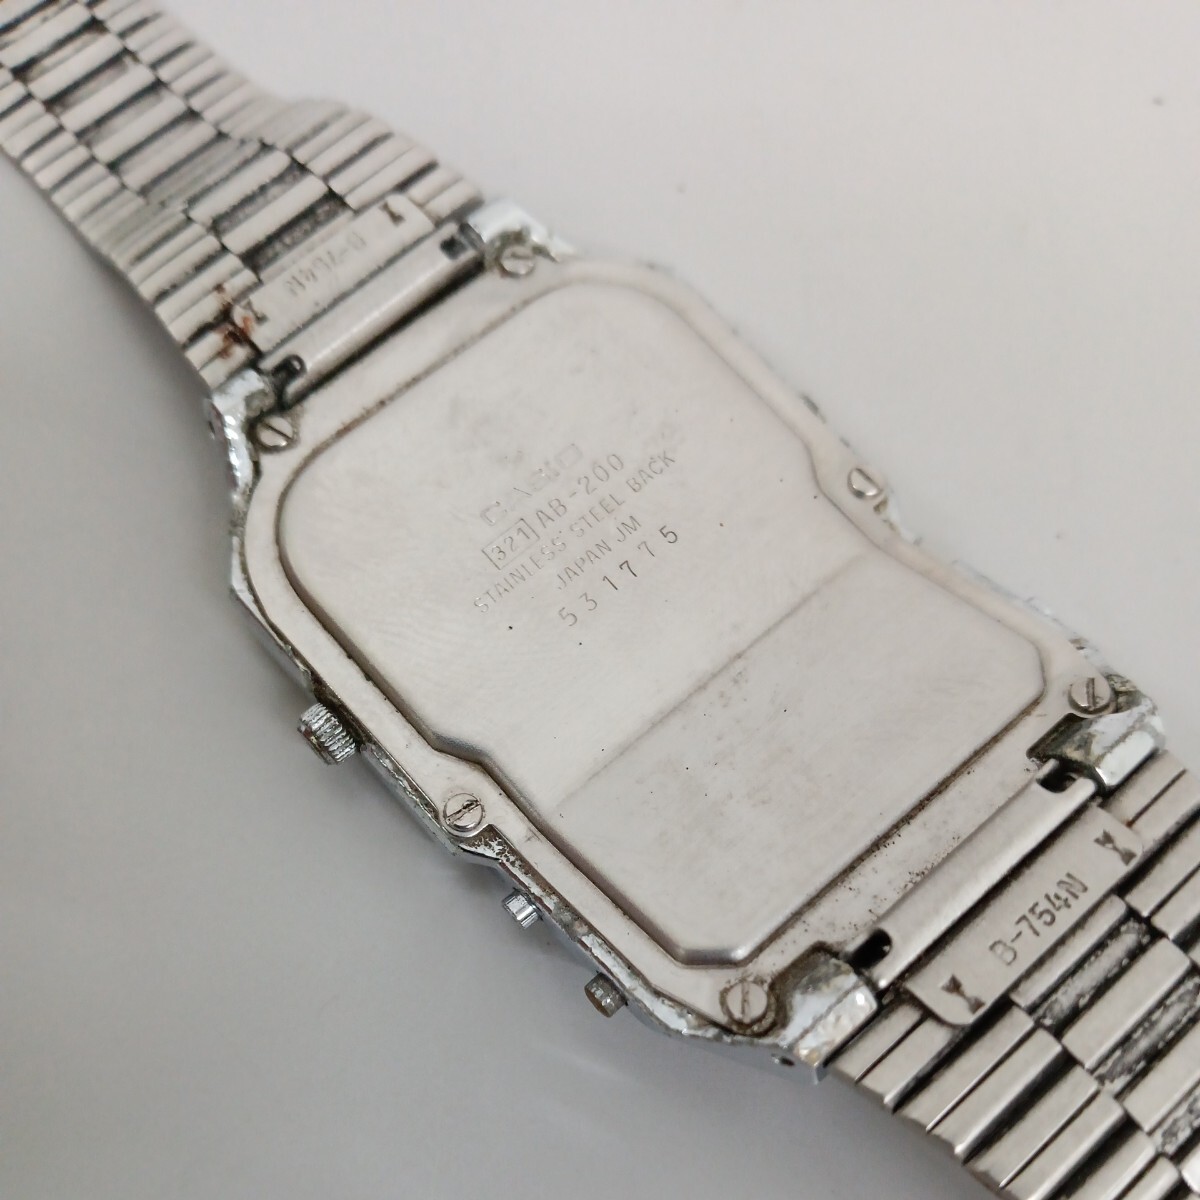 CASIO 腕時計 AB-200 アラームクロノグラフ TELEMEMO 20 白文字盤 6299の画像4